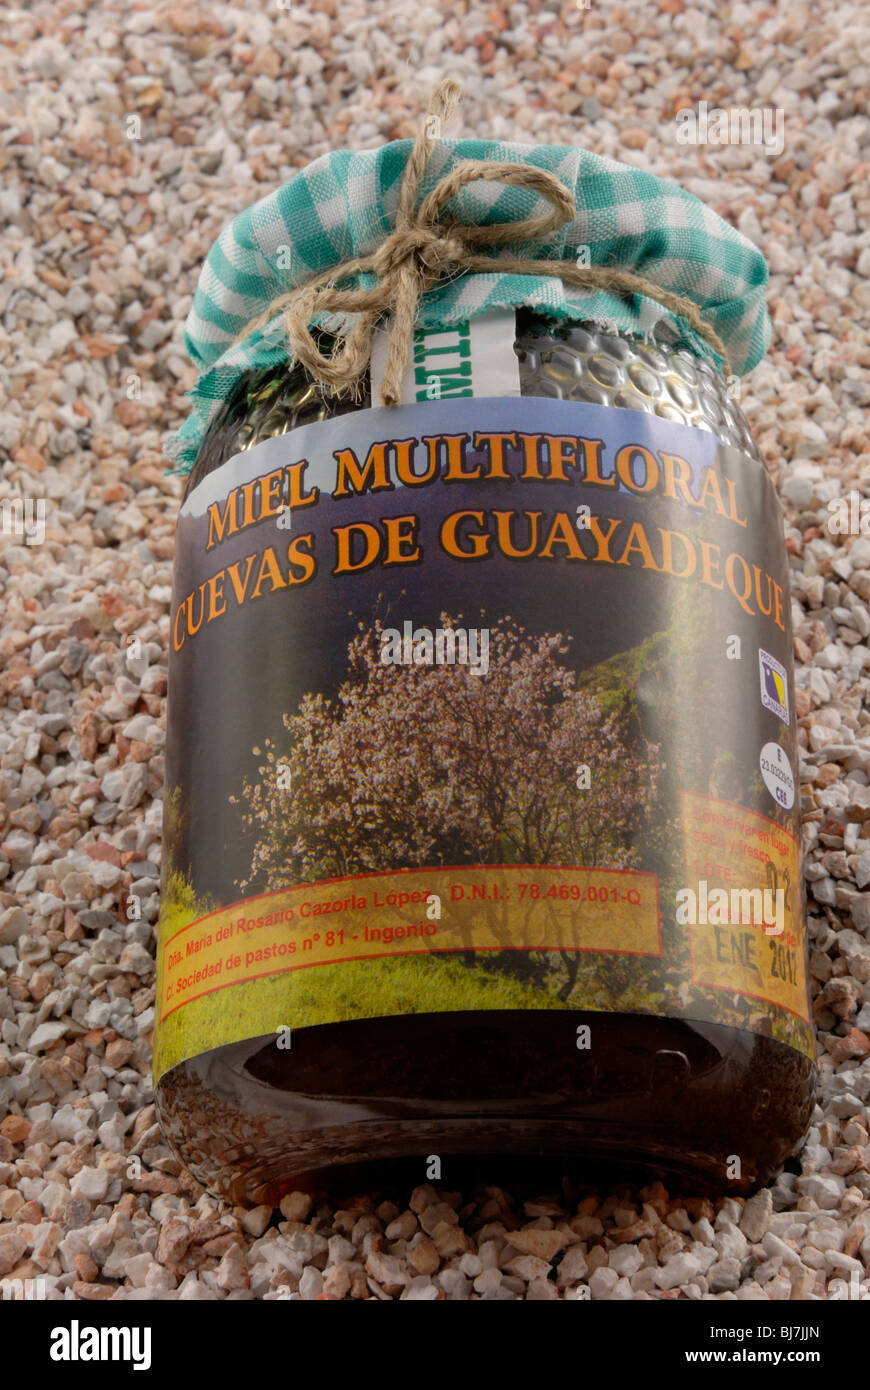 Ein Glas Miel Individualcharakter Cuevas de Guayadeque, Blütenhonig von Guayadeque Schlucht. Barranco de Guayadeque, Guayadeque Schlucht, Stockfoto